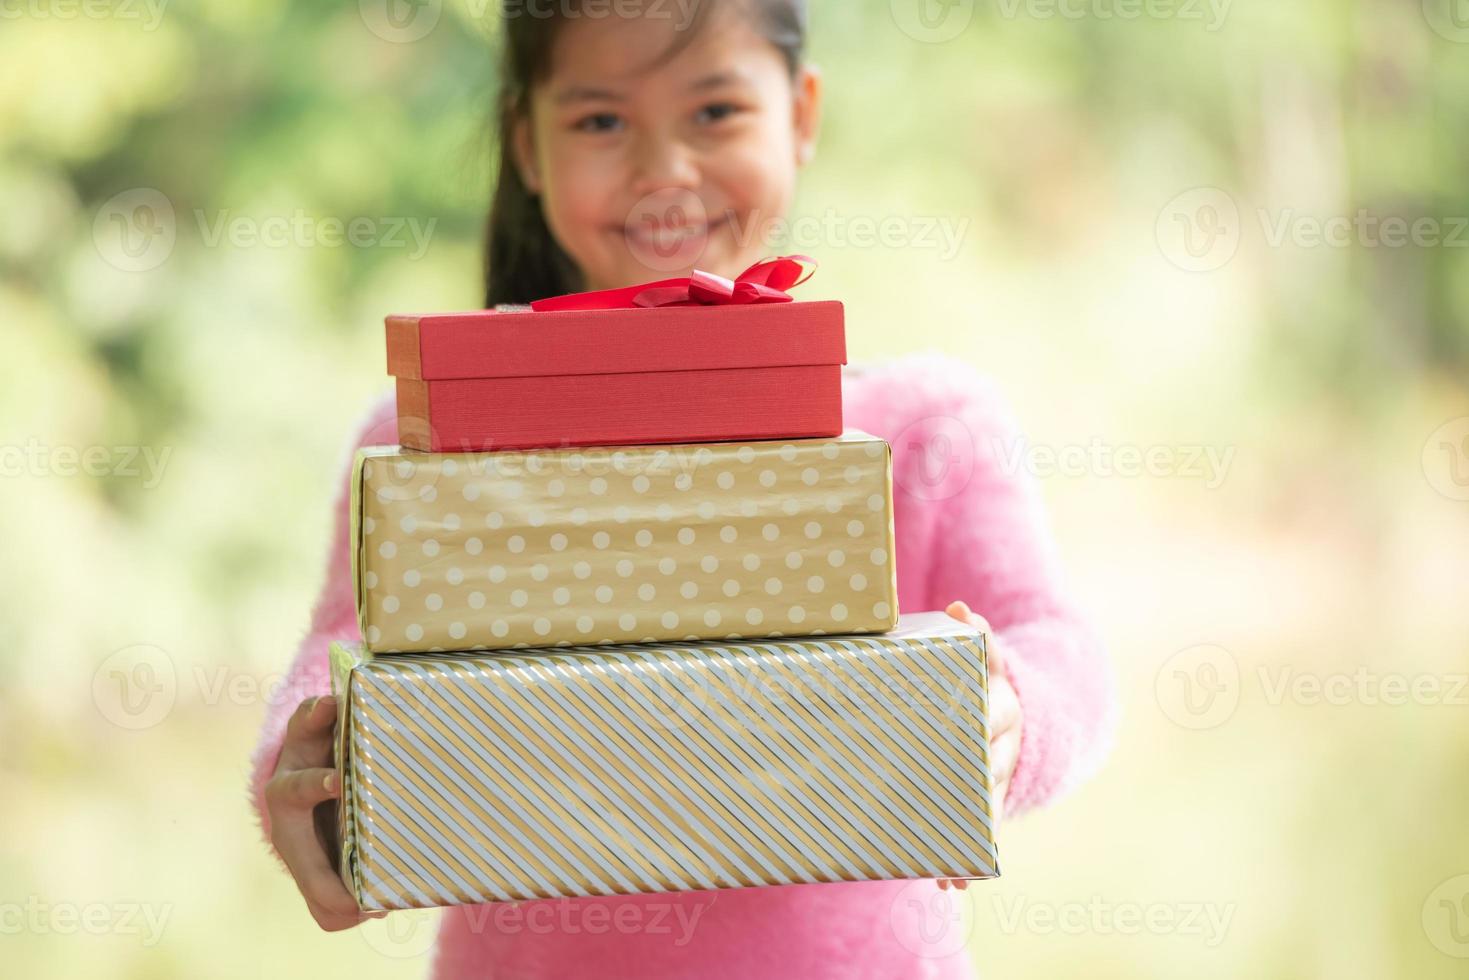 jul porträtt av glada leende liten flicka barn med presentförpackning nära en grön gren träd. gröna blad bokeh ur fokus bakgrund från naturskog. foto